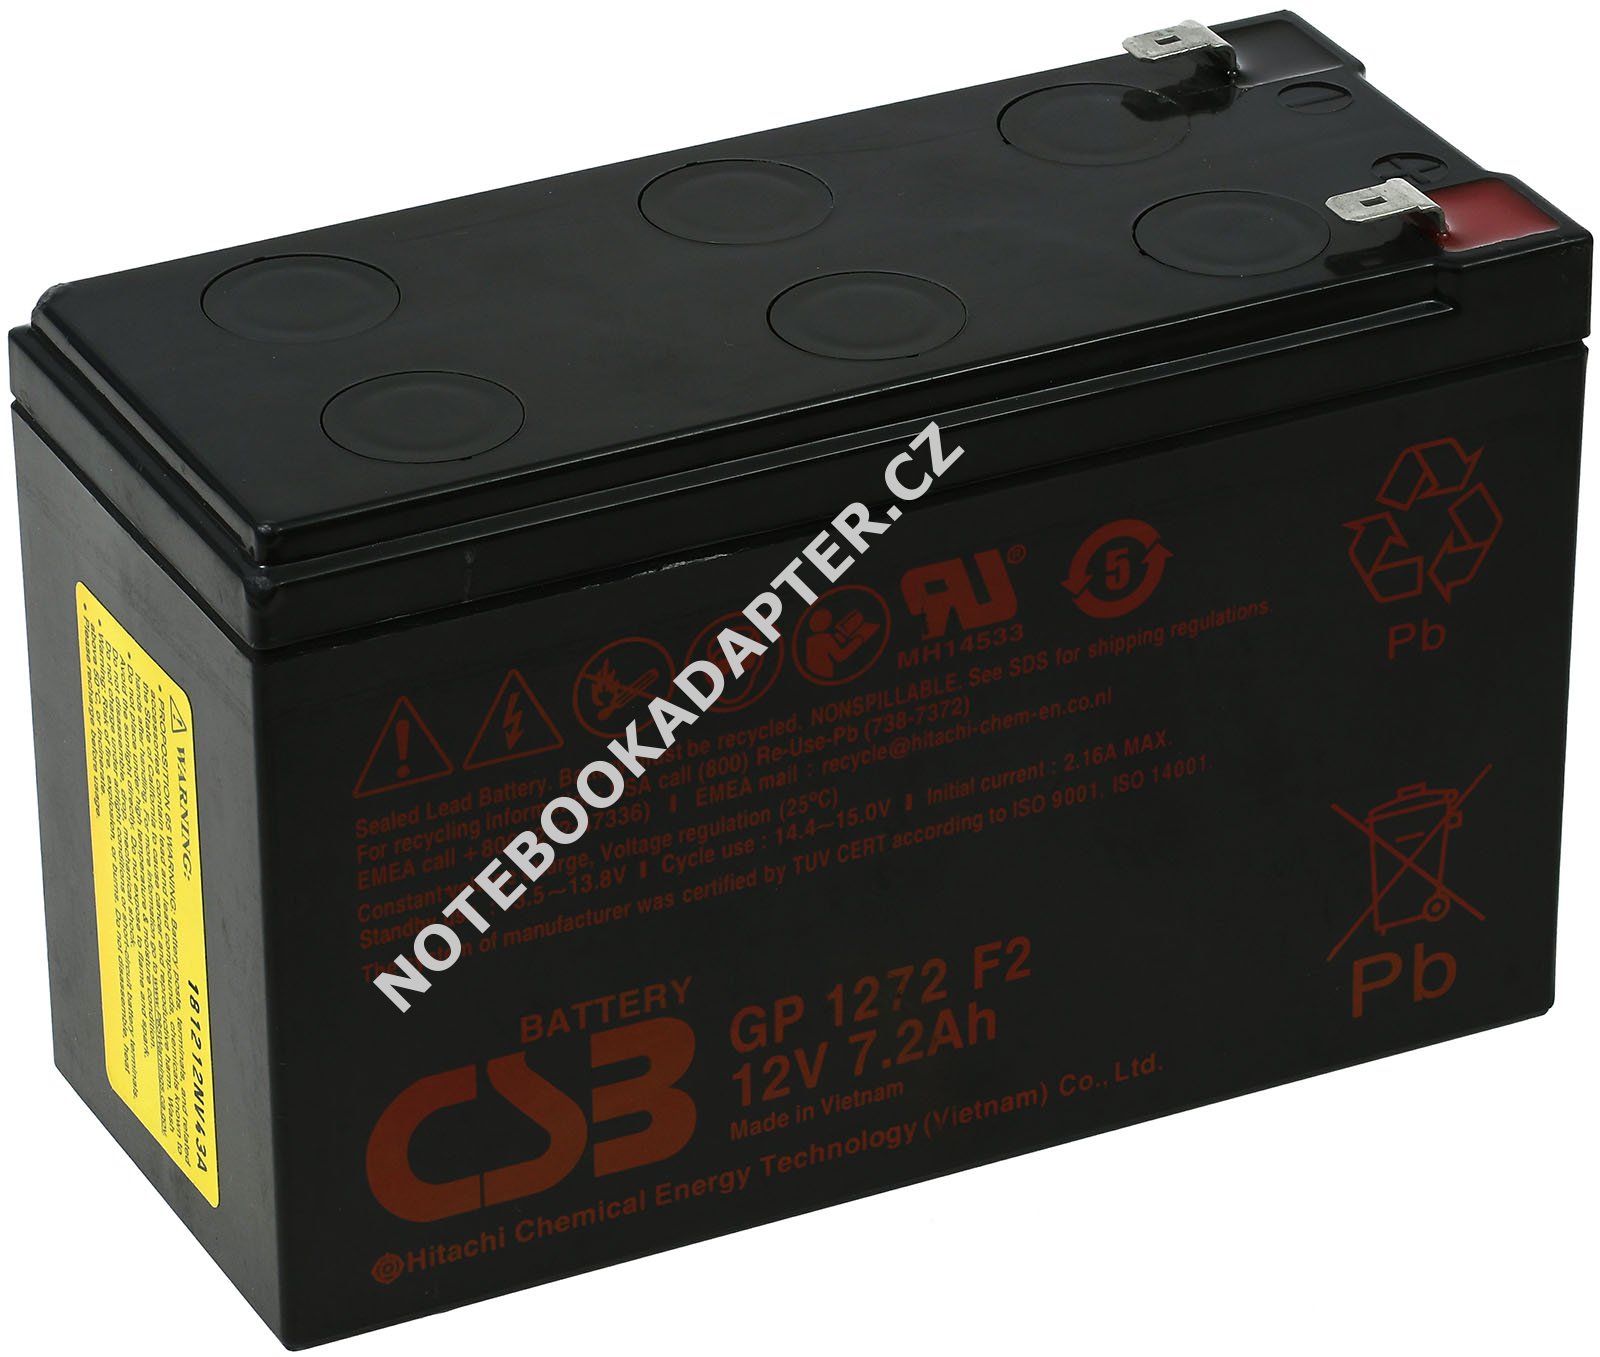 Akumulátor GP1272 F2 12V 7,2Ah - CSB Stanby originál